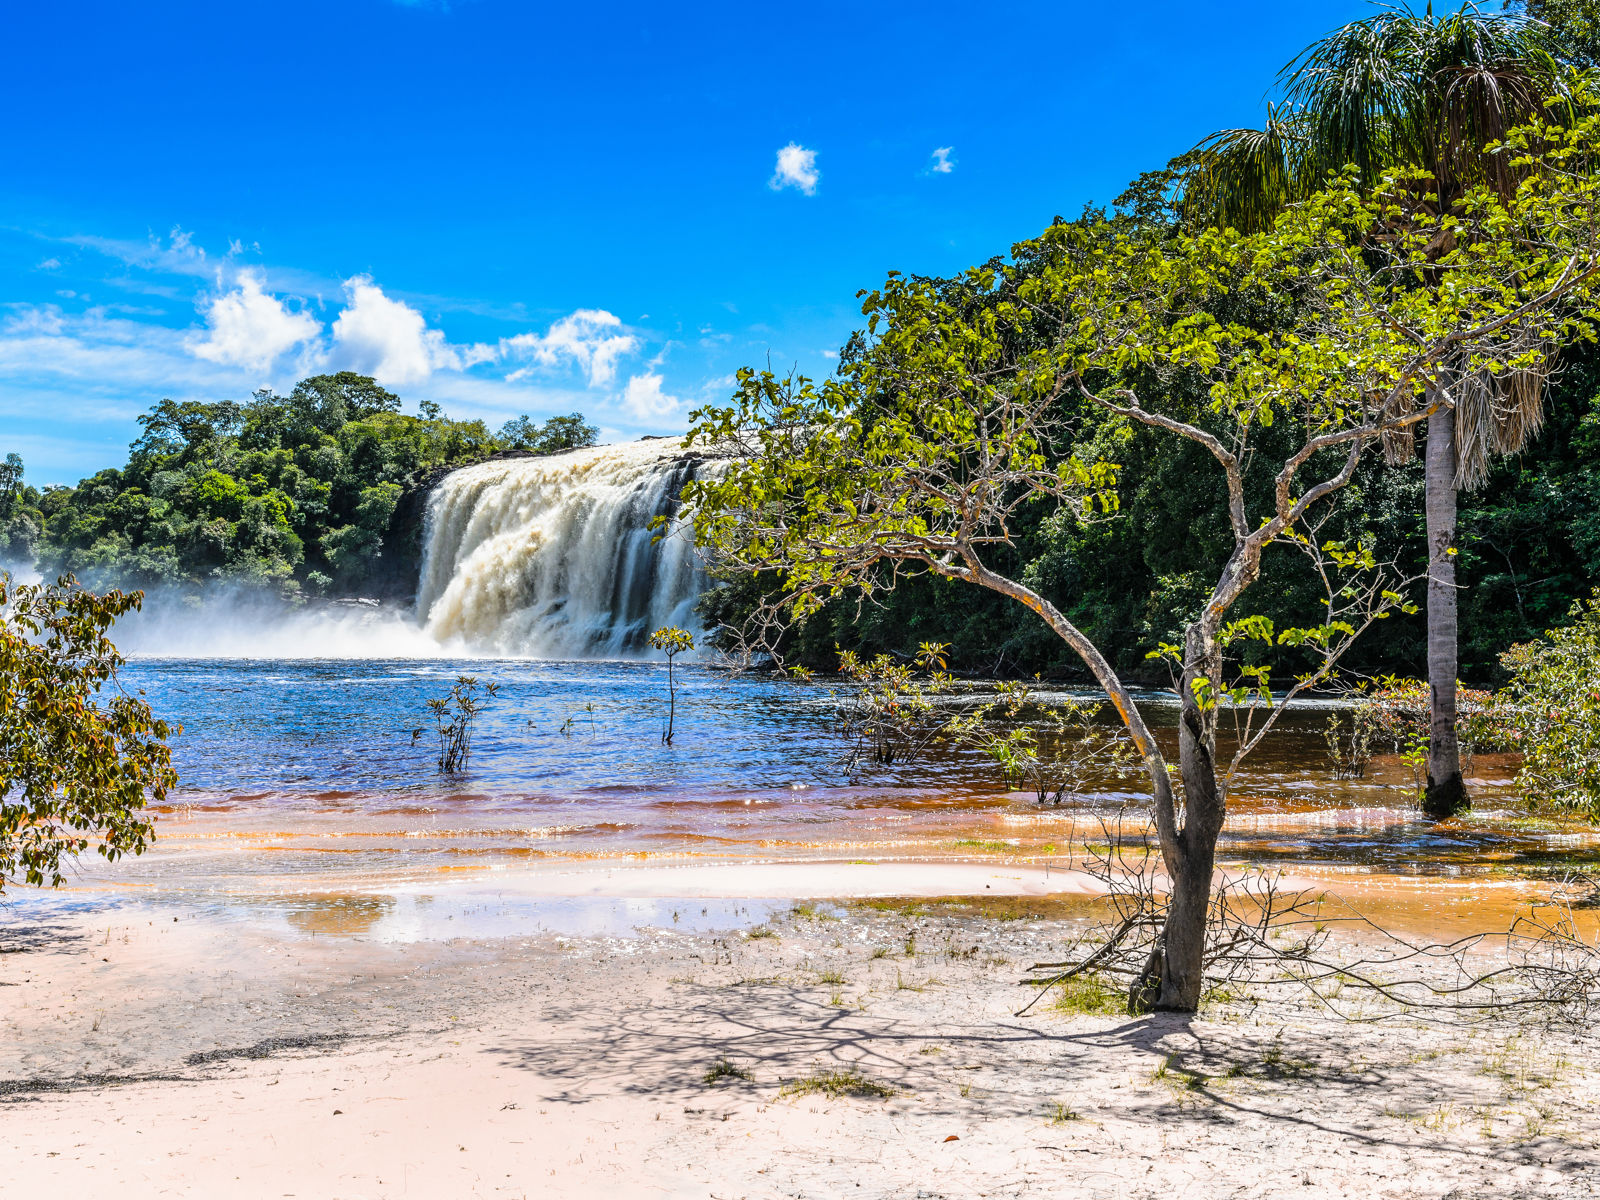 Resa till Venezuela - majestätiskt vattenfall i tropiskt landskap med frodig grönska och blå himmel.